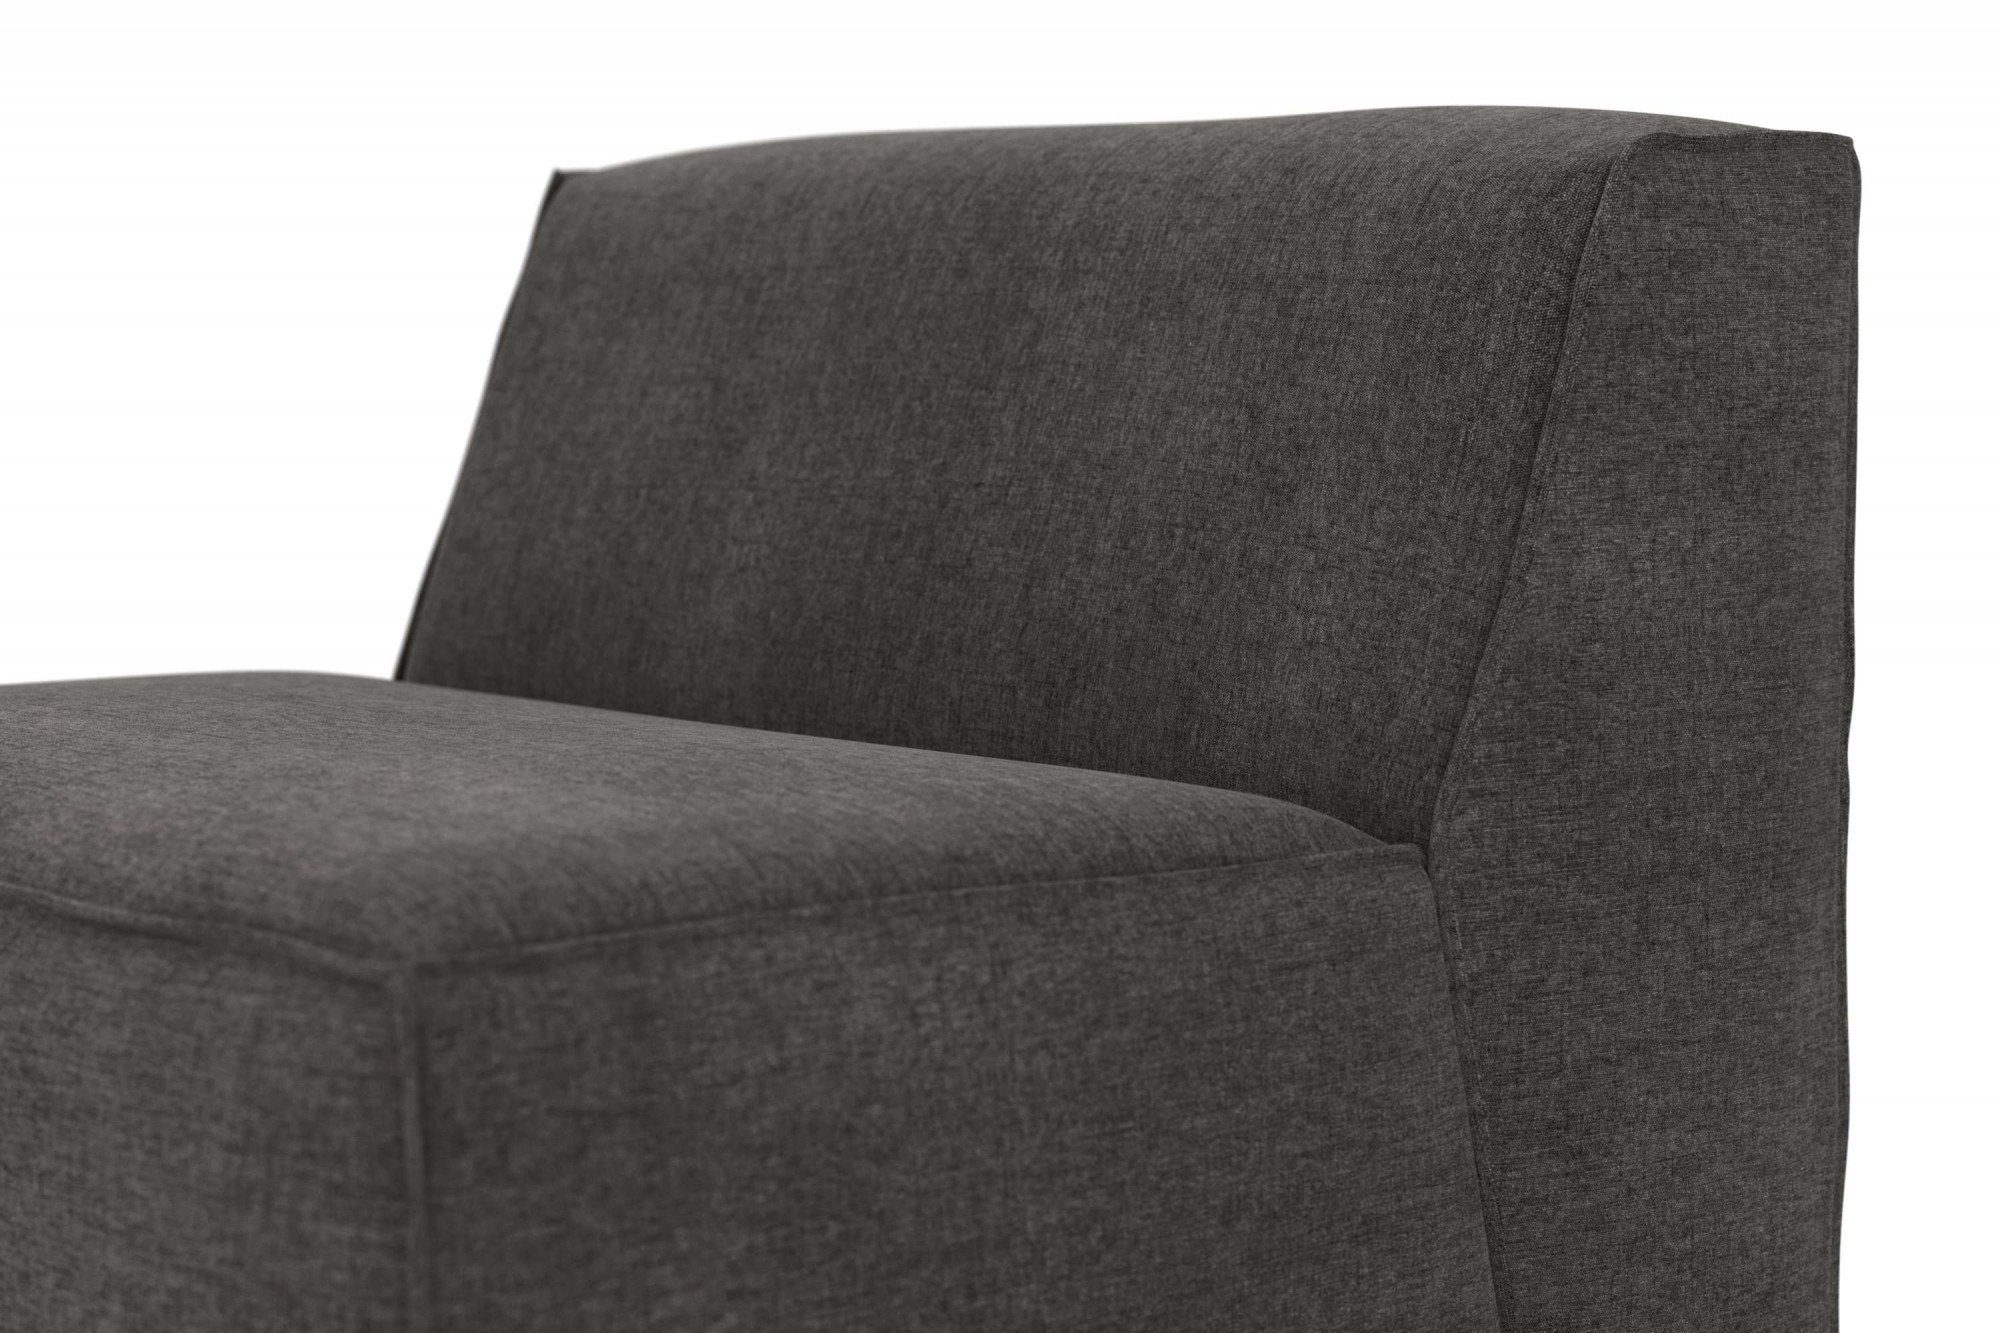 modular, große an Polsterung und Sofa-Mittelelement Komfortschaum, Modulen dark gray Norvid, Auswahl mit RAUM.ID